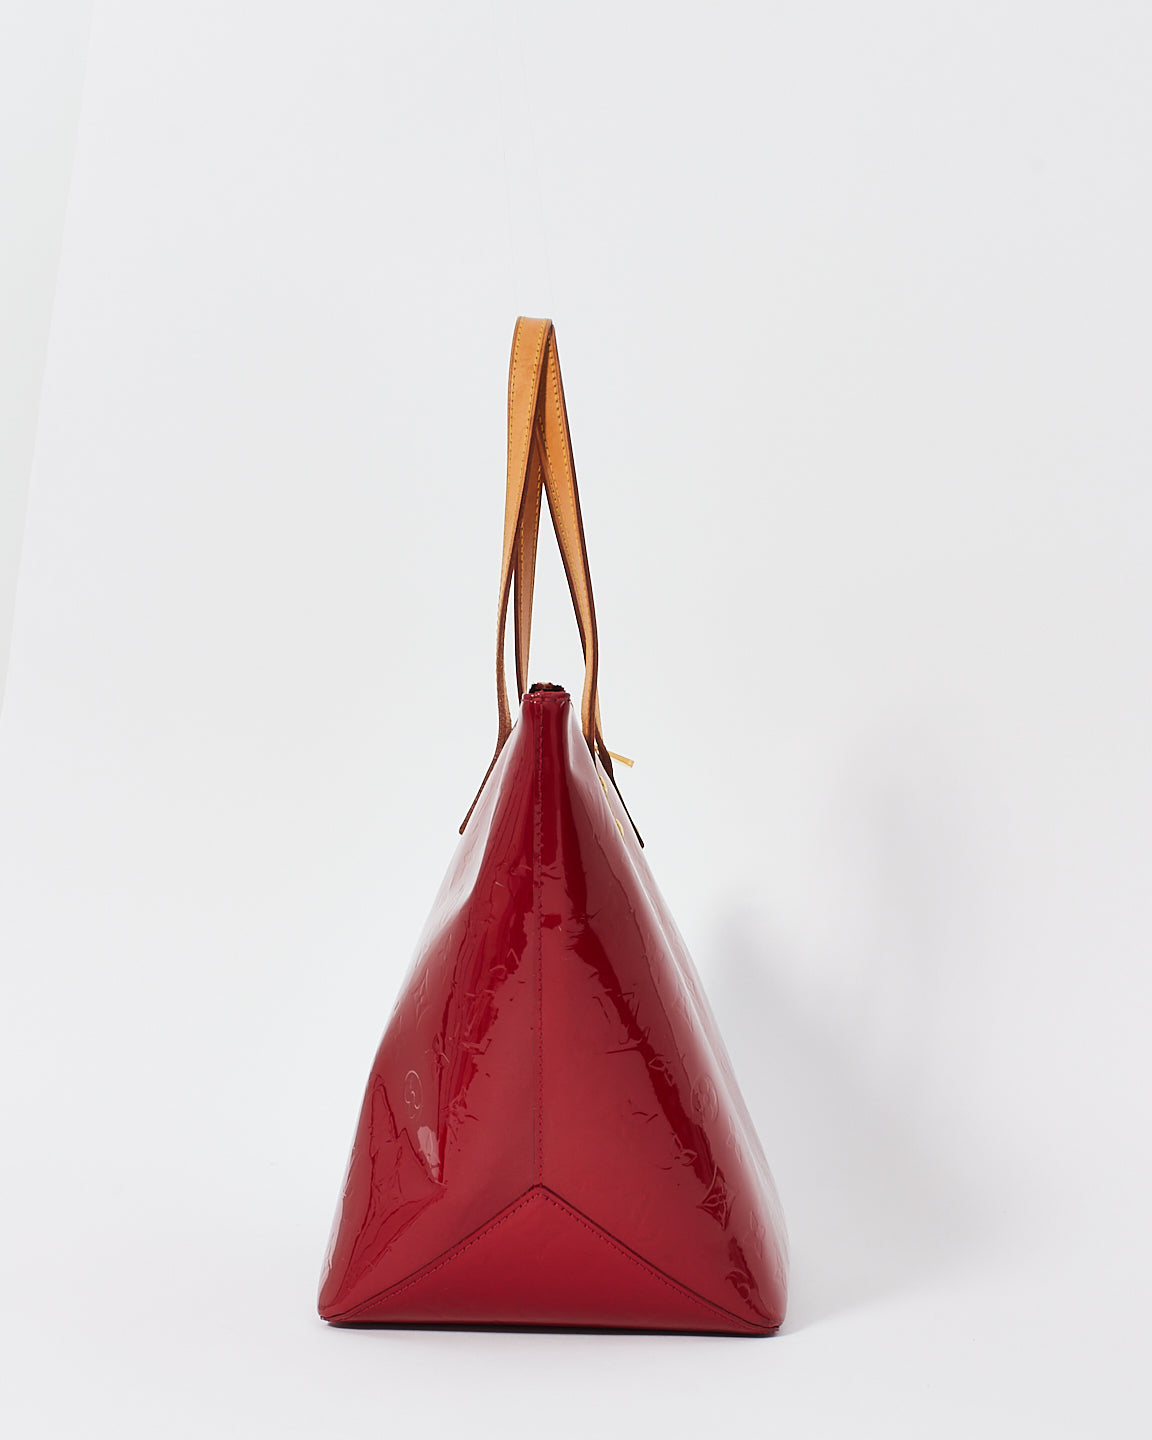 Louis Vuitton Red (Pomme D'Amour) Monogram Vernis Bellevue GM Tote Bag